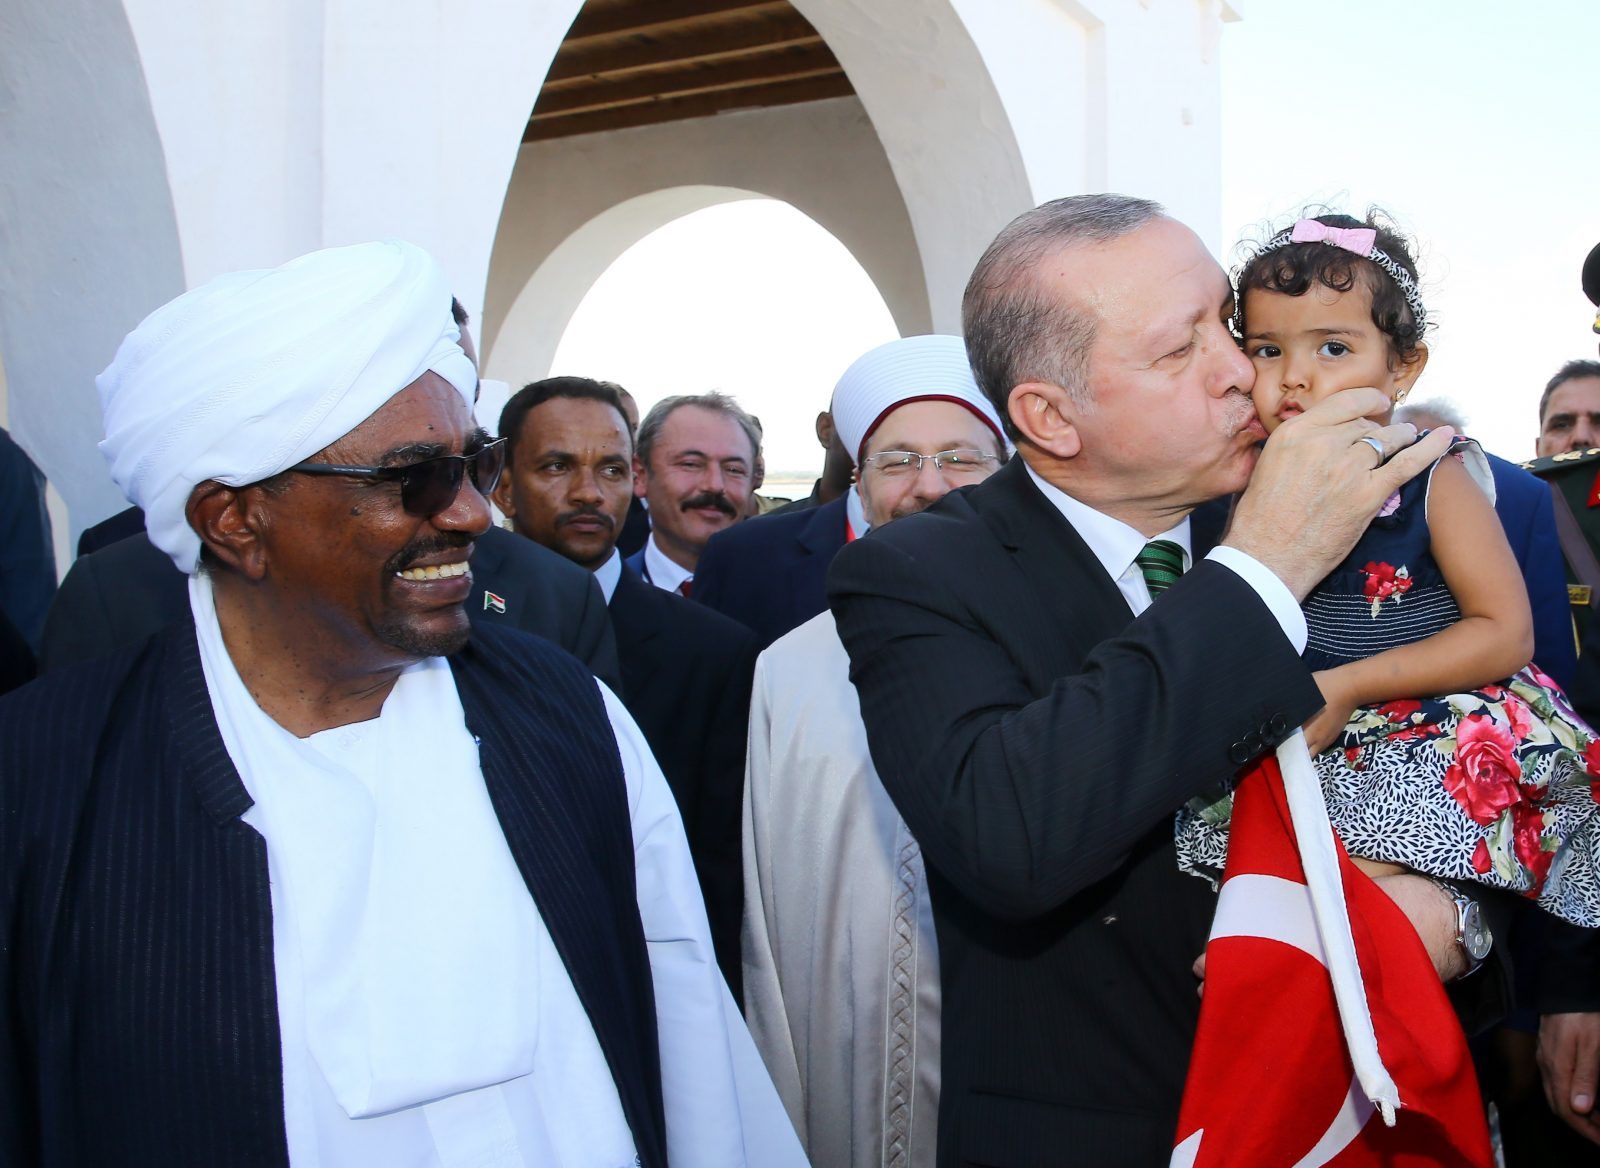 الرئيس التركي رجب طيب إردوغان يقبل طفلة صغيرة وهو يسير مع الرئيس السوداني عمر البشير خلال زيارته في بورتسودان – 25 ديسمبر 2017. وقام إردوغان بجولة في جزيرة سواكن في اليوم الثاني من زيارته. (أ.ف)